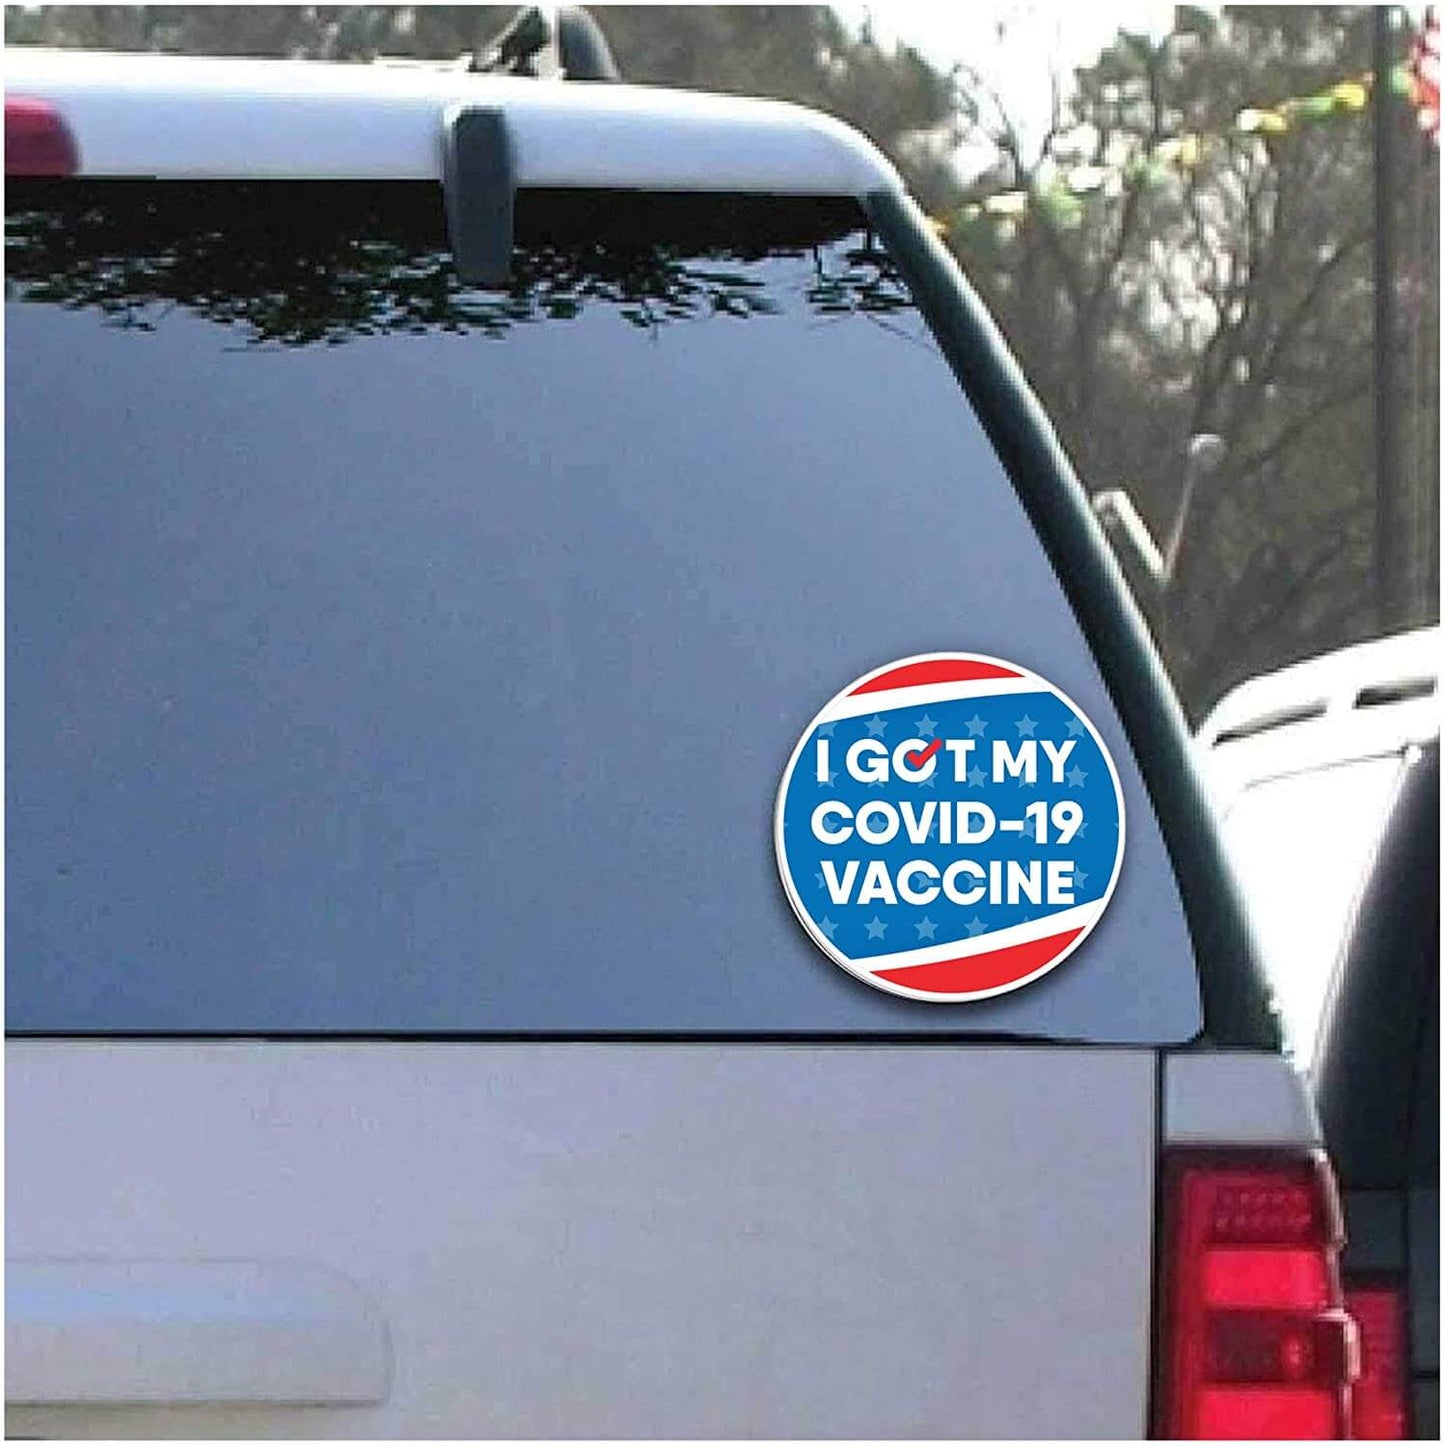 I got my Covid-19 vaccine car decal